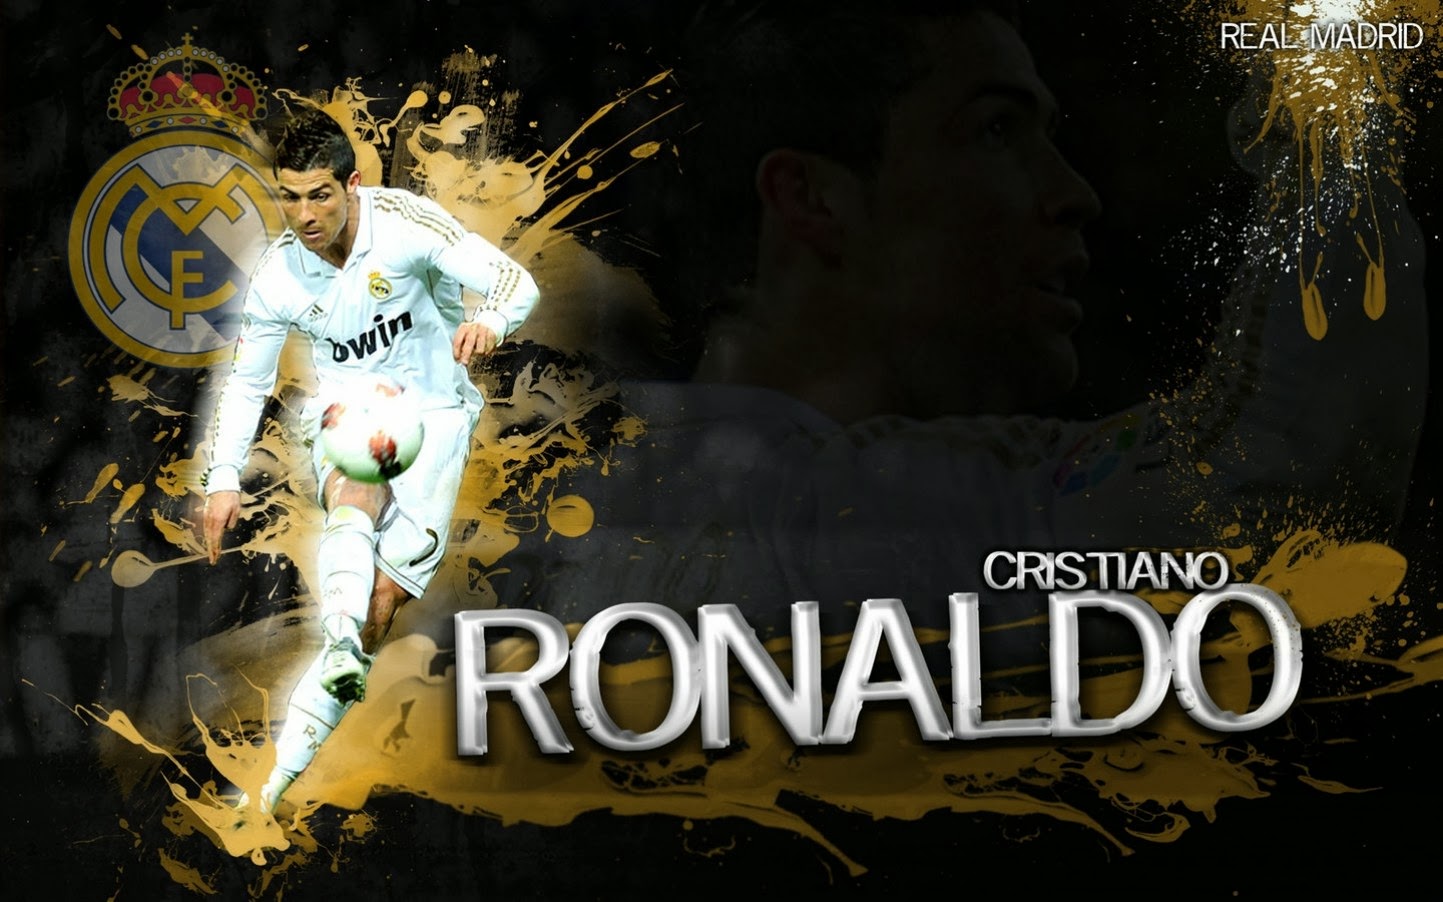 Cristiano Ronaldo Vs Messi Wallpaper HD